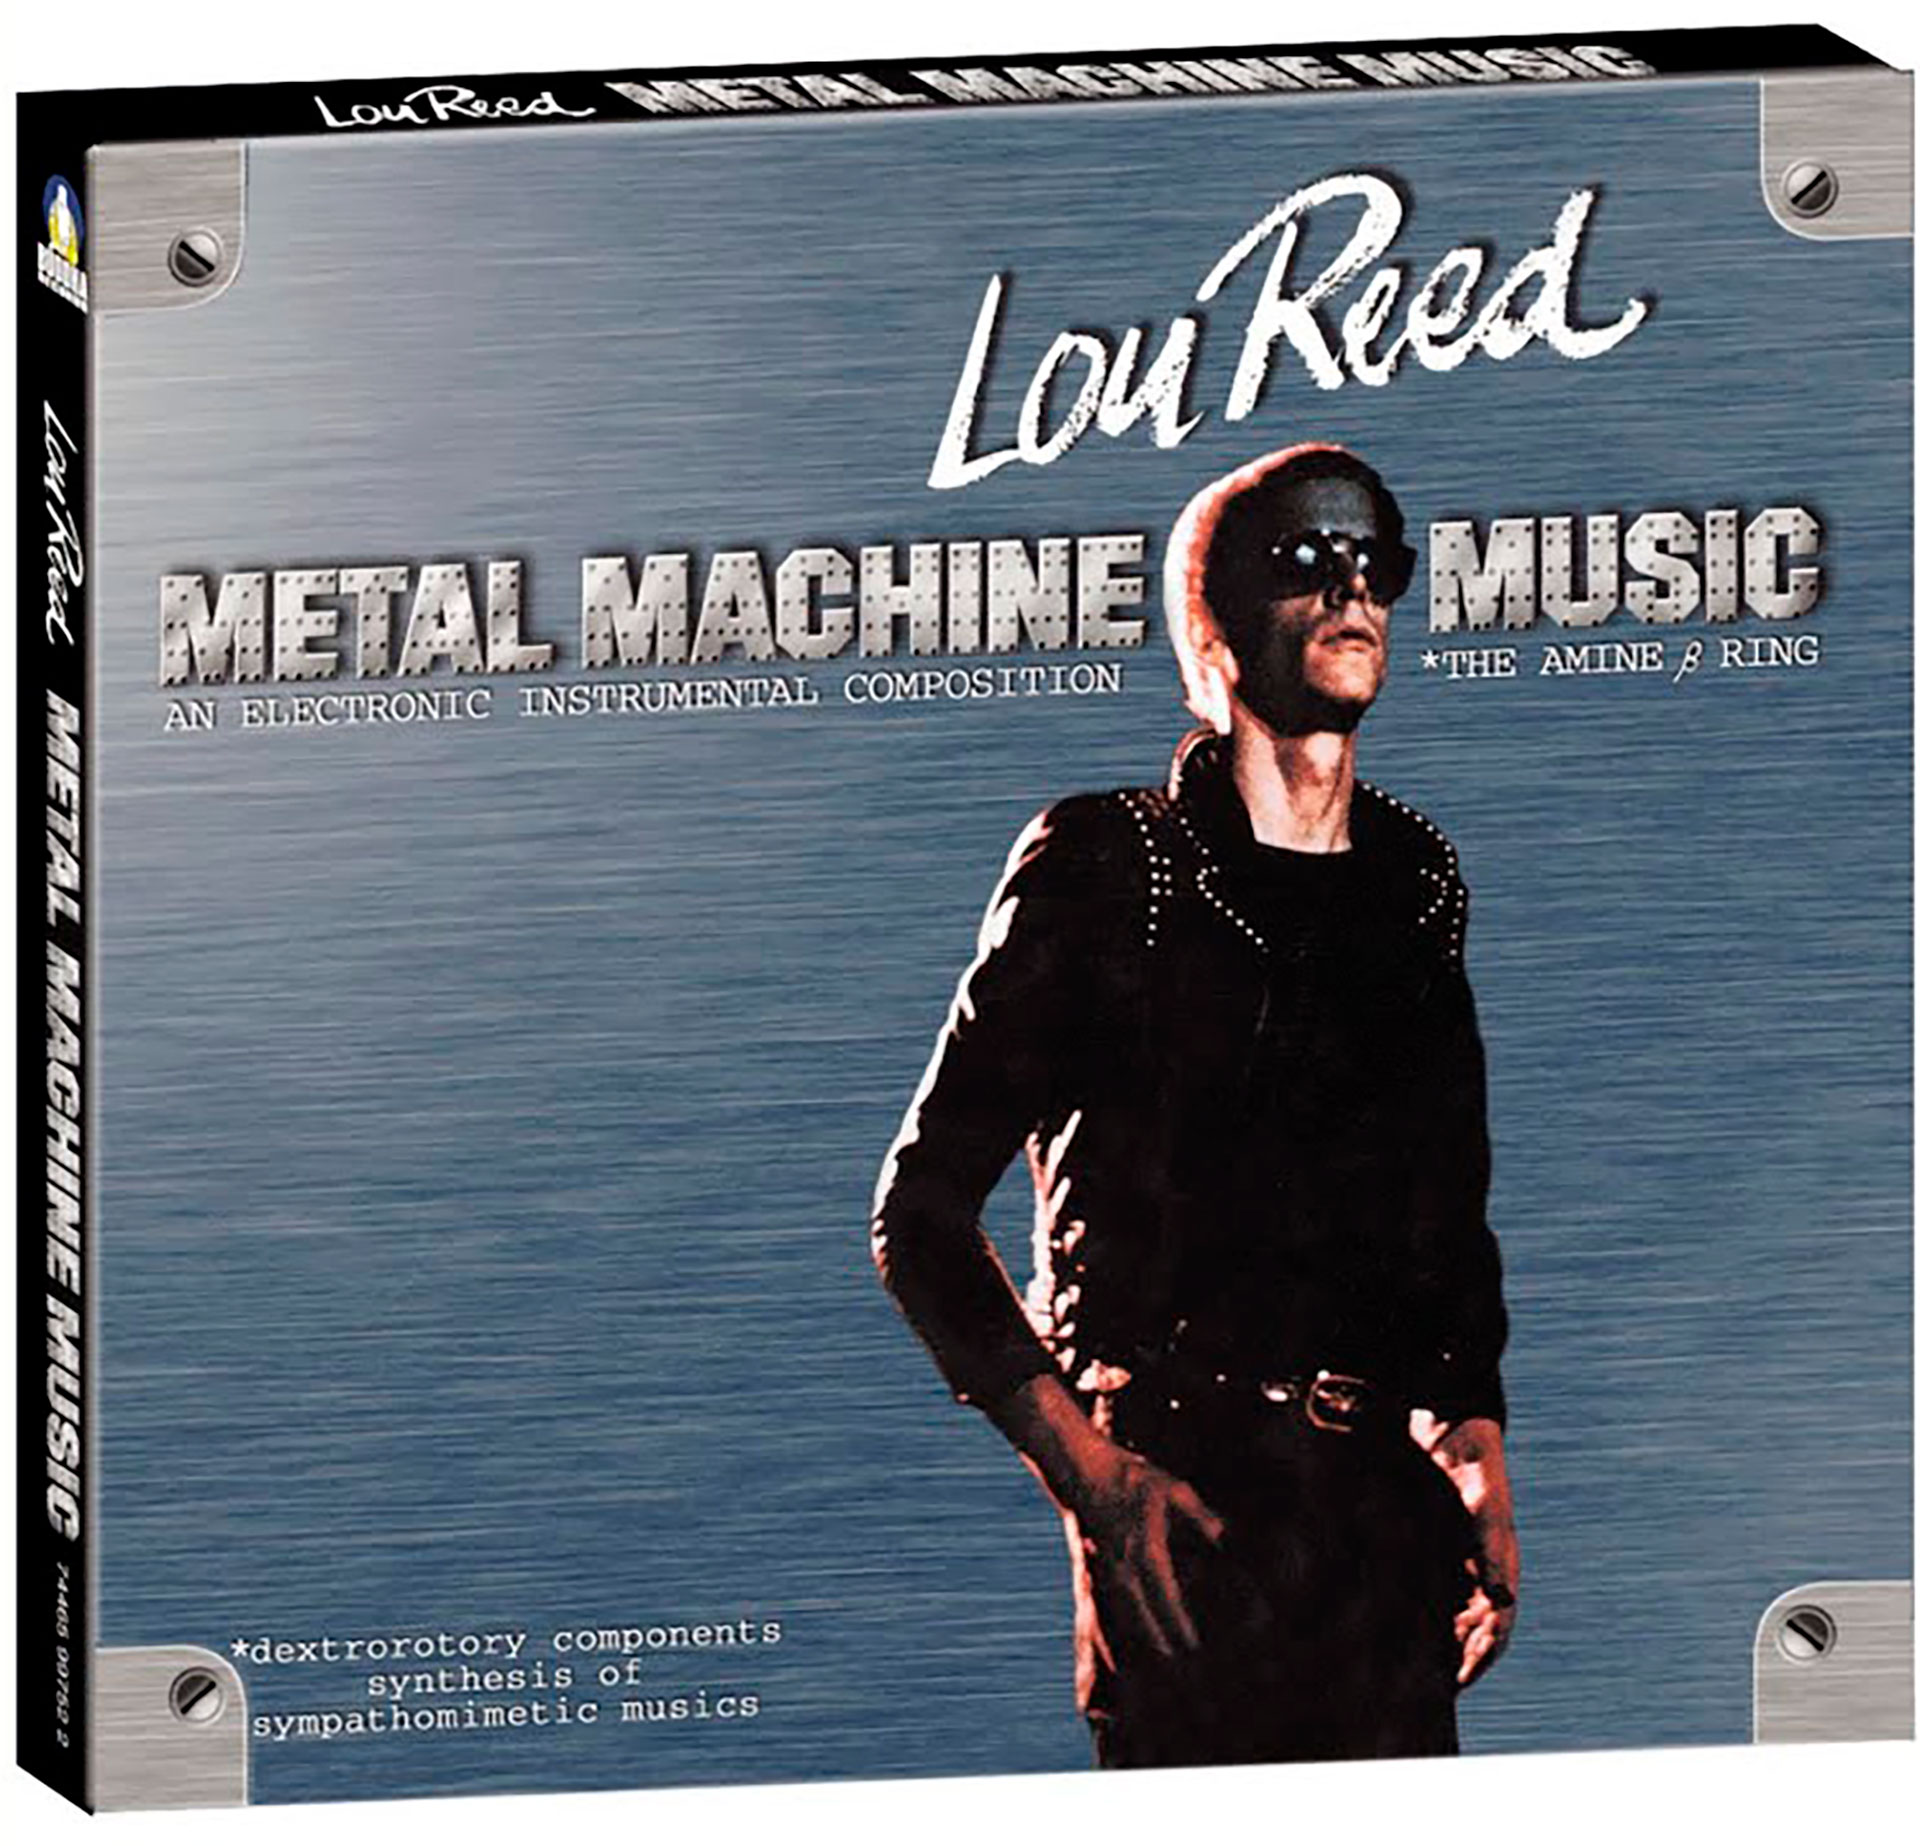 Metal Machine Music fue el disco más extremo de Lou Reed. Reconoció que era inescuchable hasta para él. 